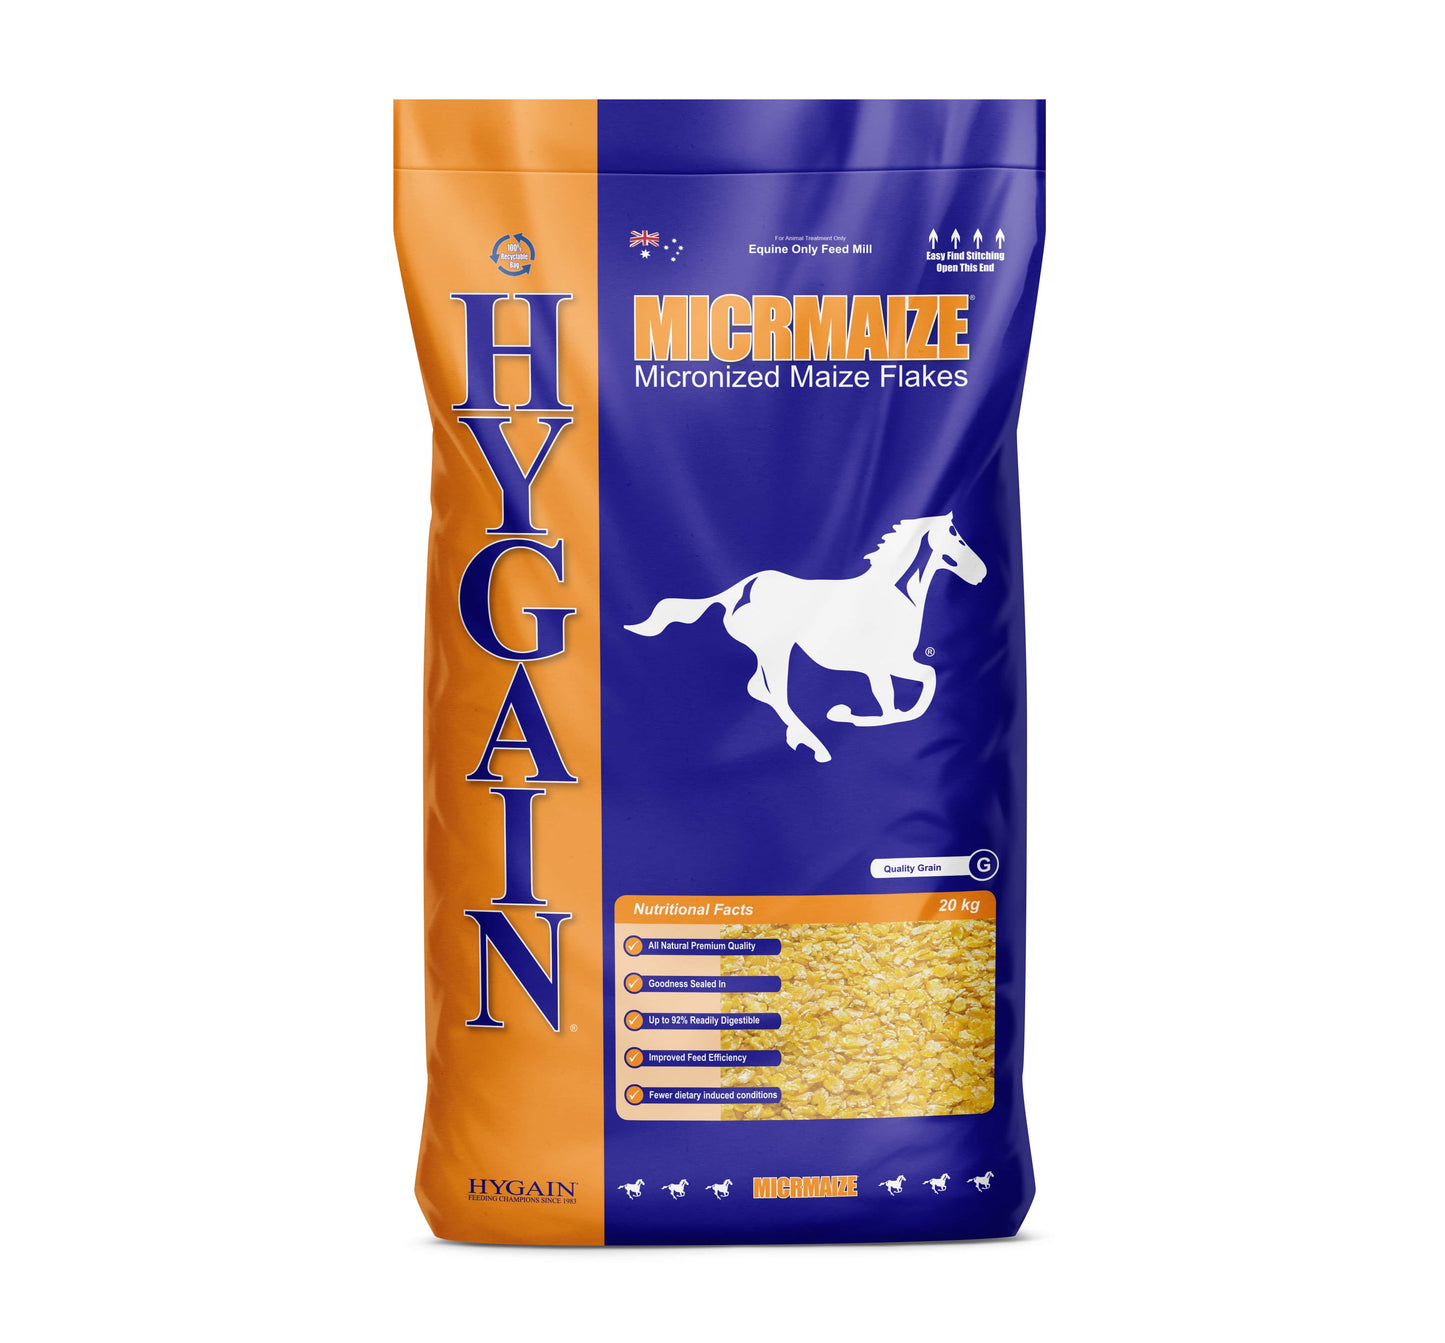 Hygain Micrmaize Horse Feed